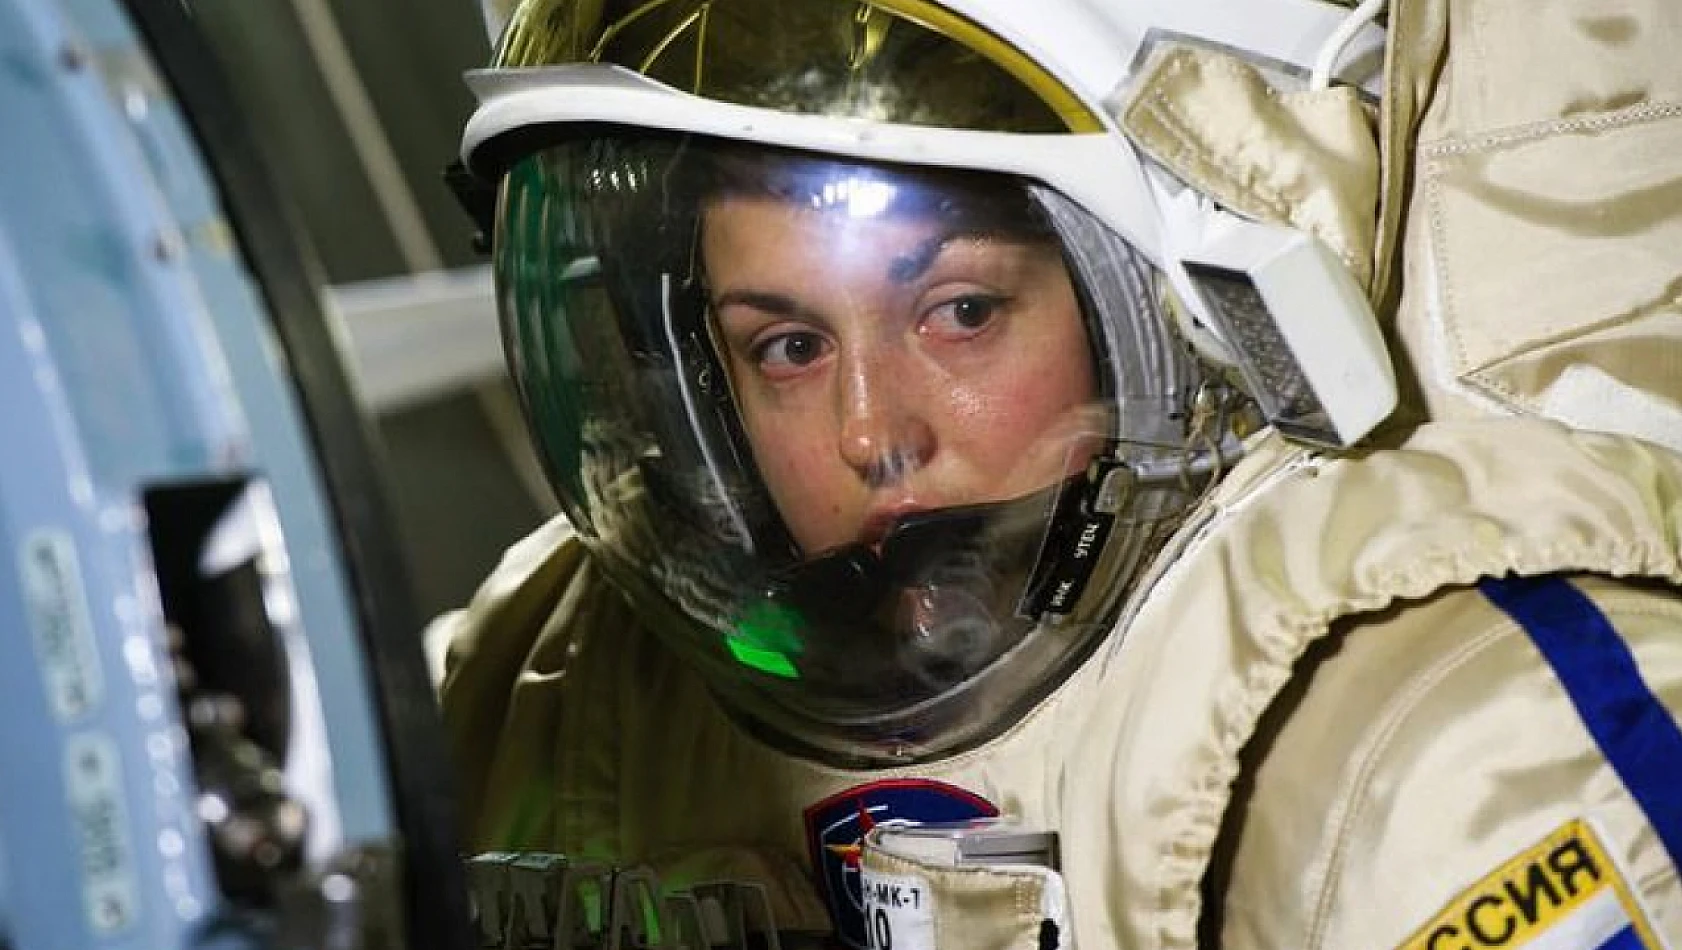 Rusya'nın ilk kadın kozmonotu Yelena Serova hakkında bilmeniz gerekenler